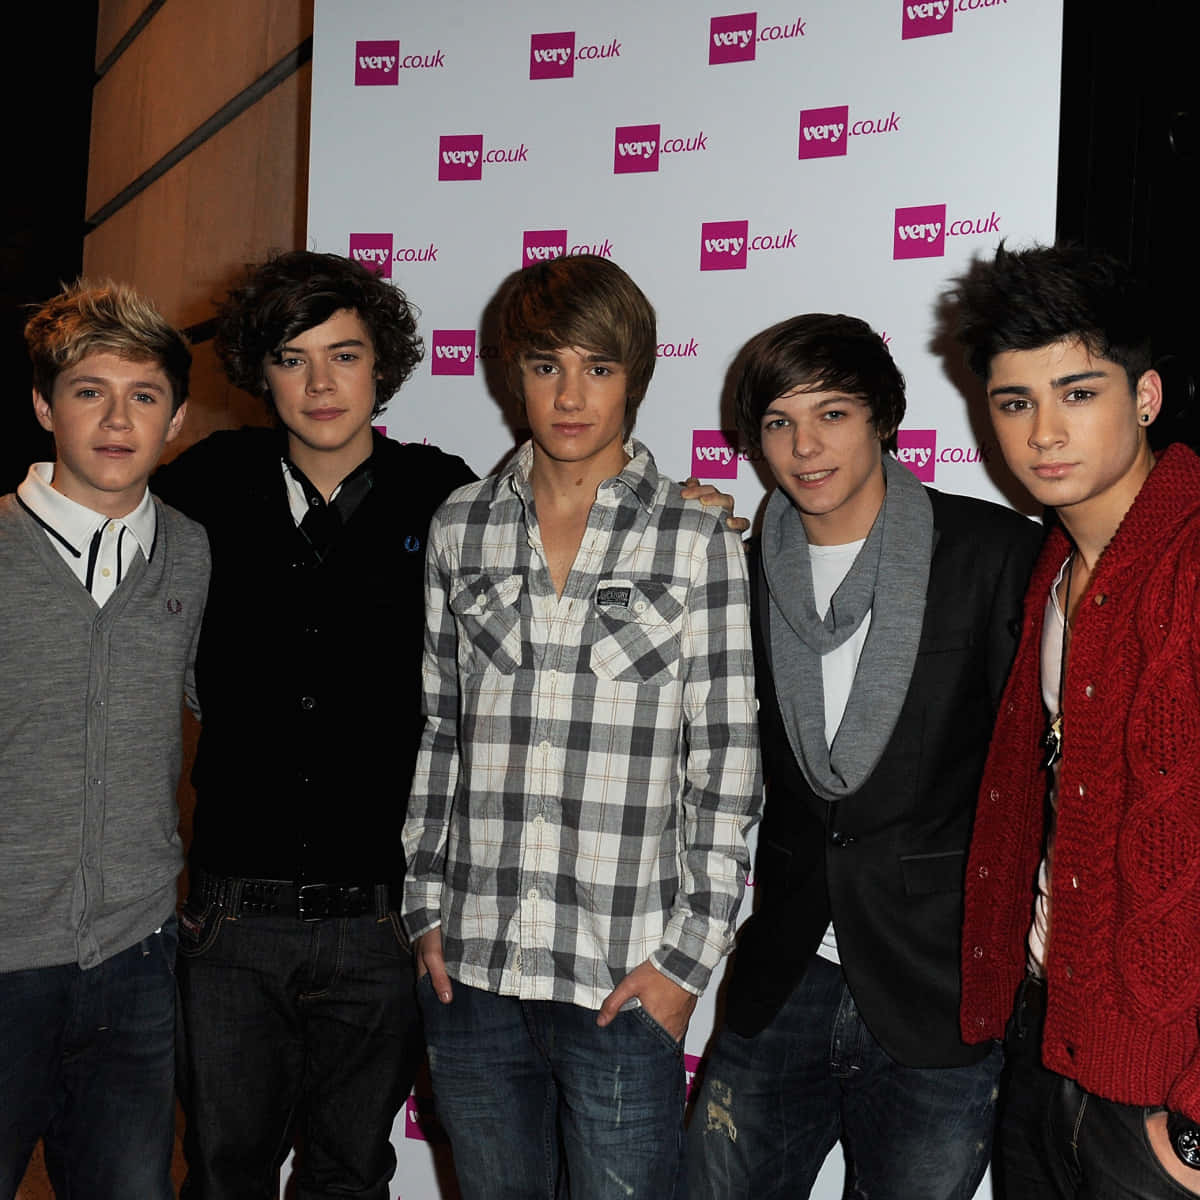 Diebritisch-irische Boyband One Direction Tritt Auf Der Bühne Für Ihre Fans Auf.